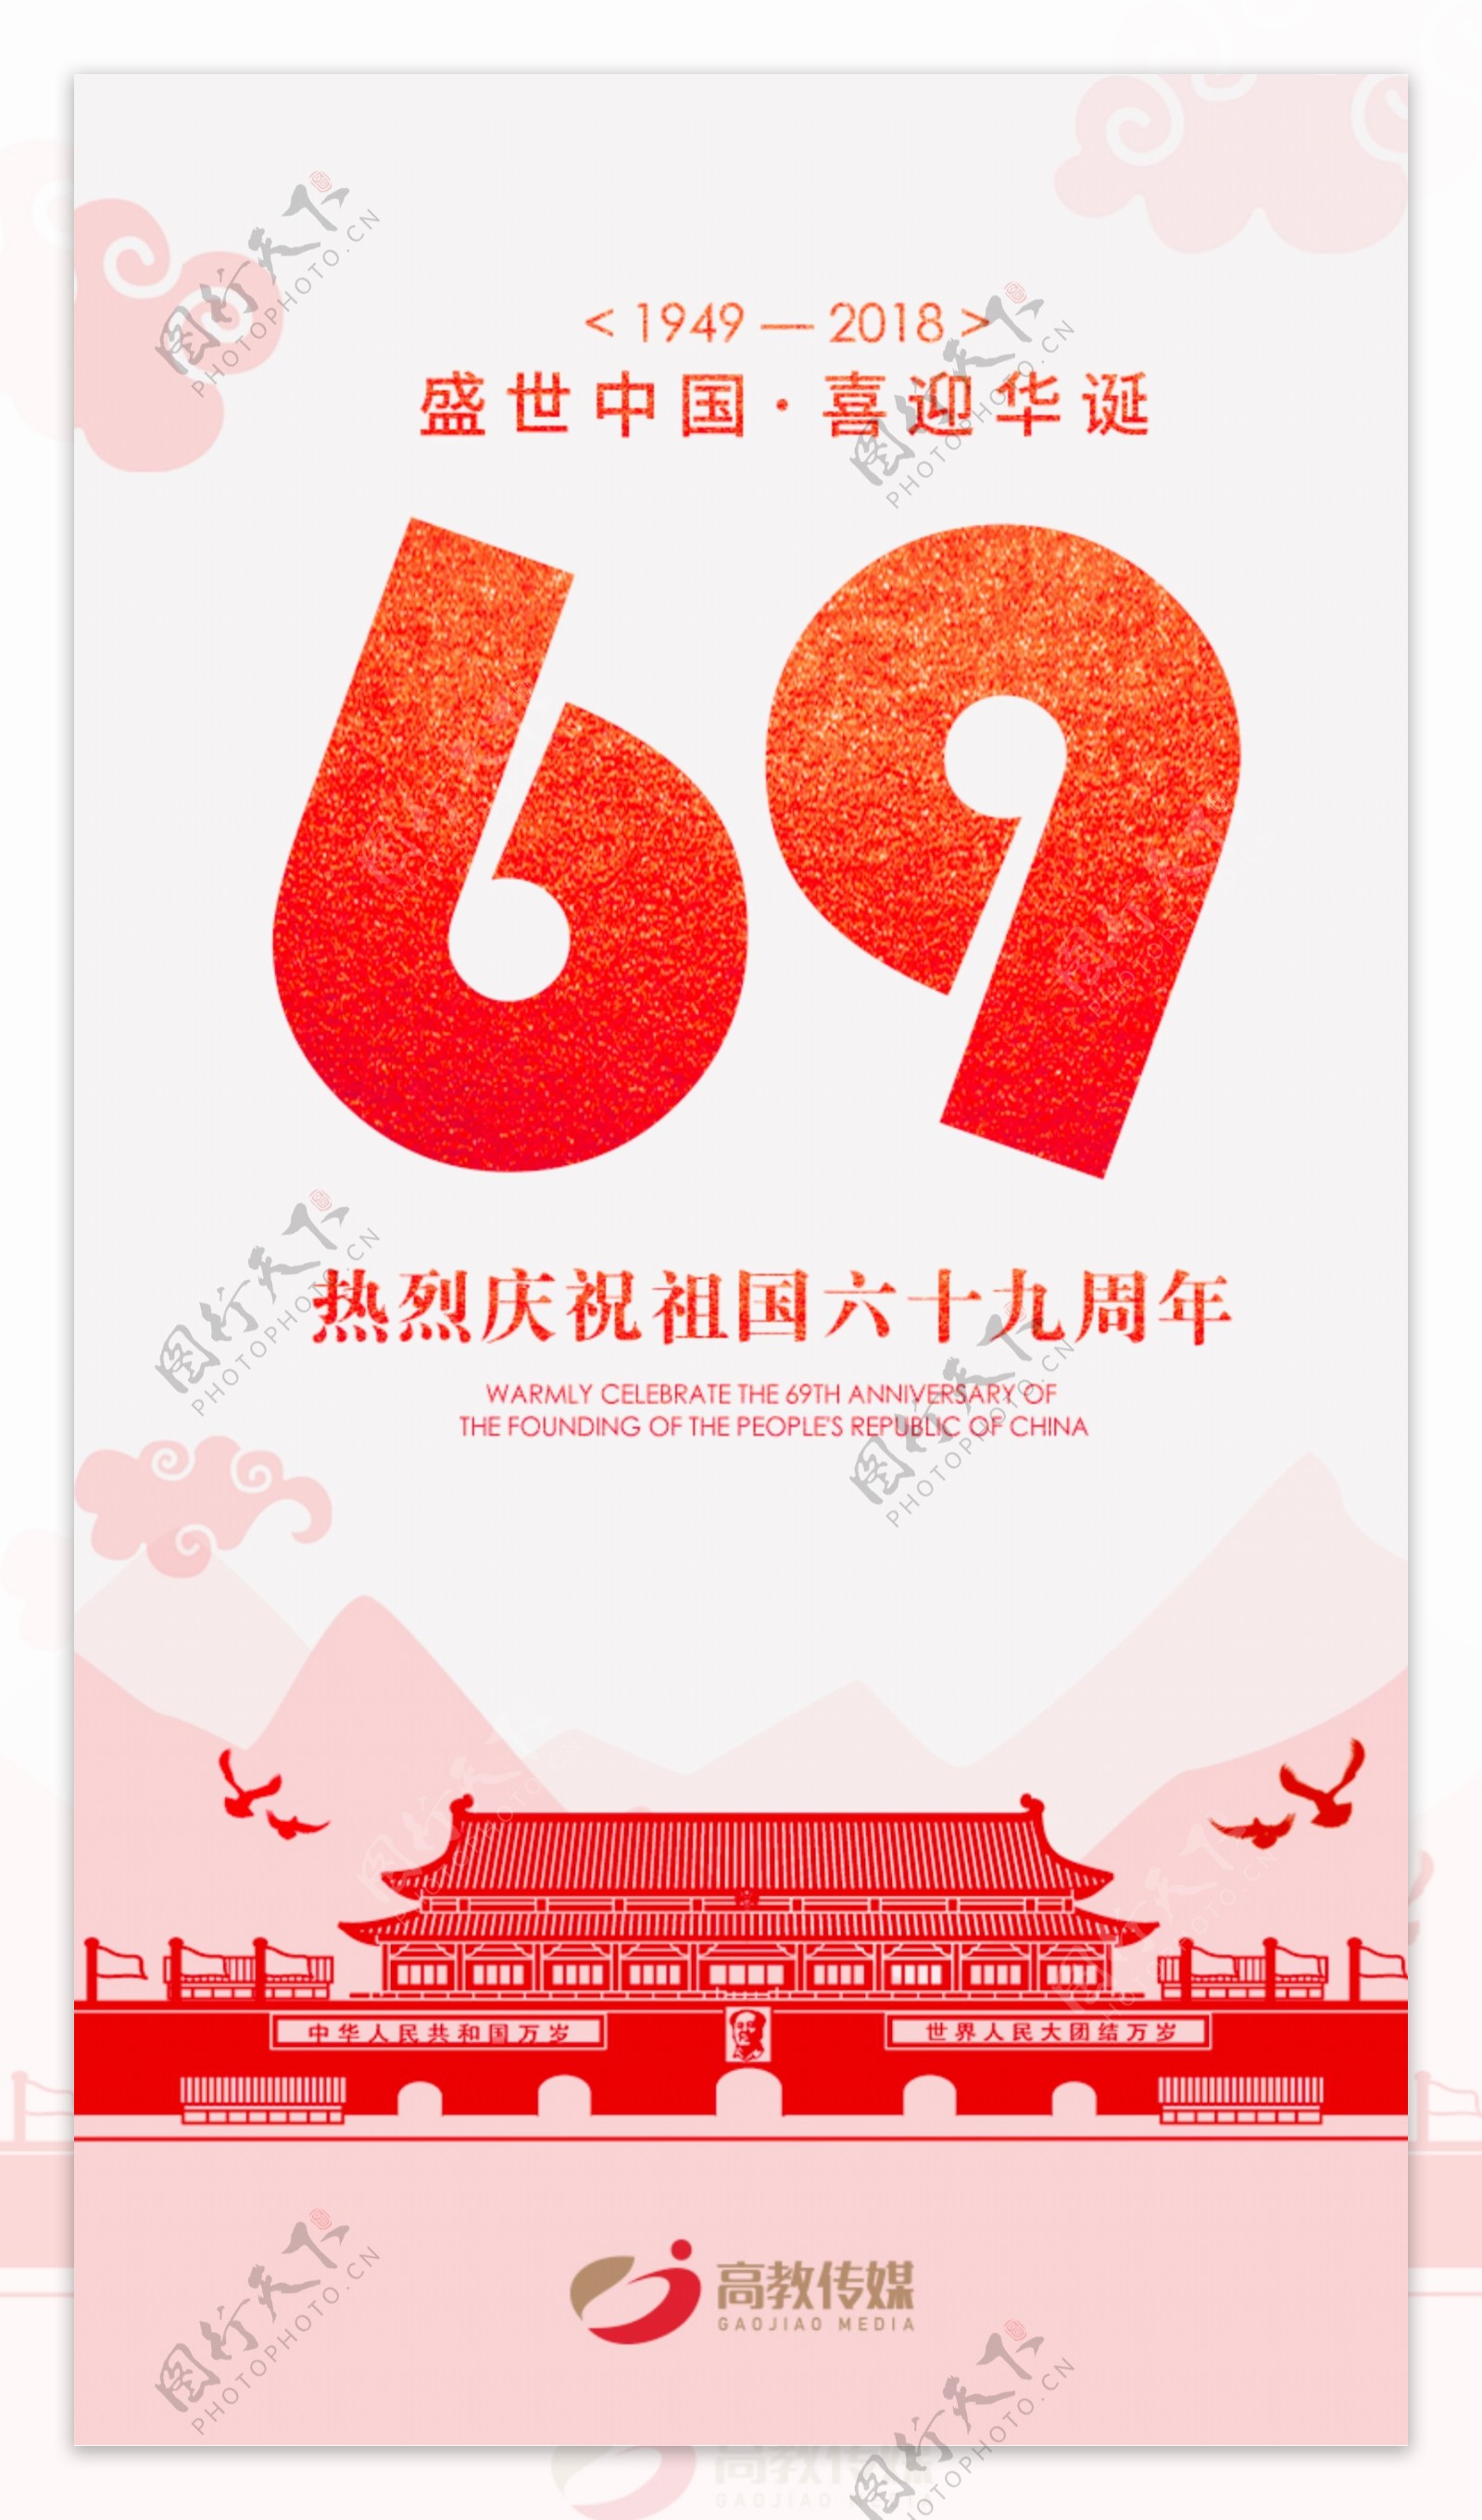 国庆69周年海报